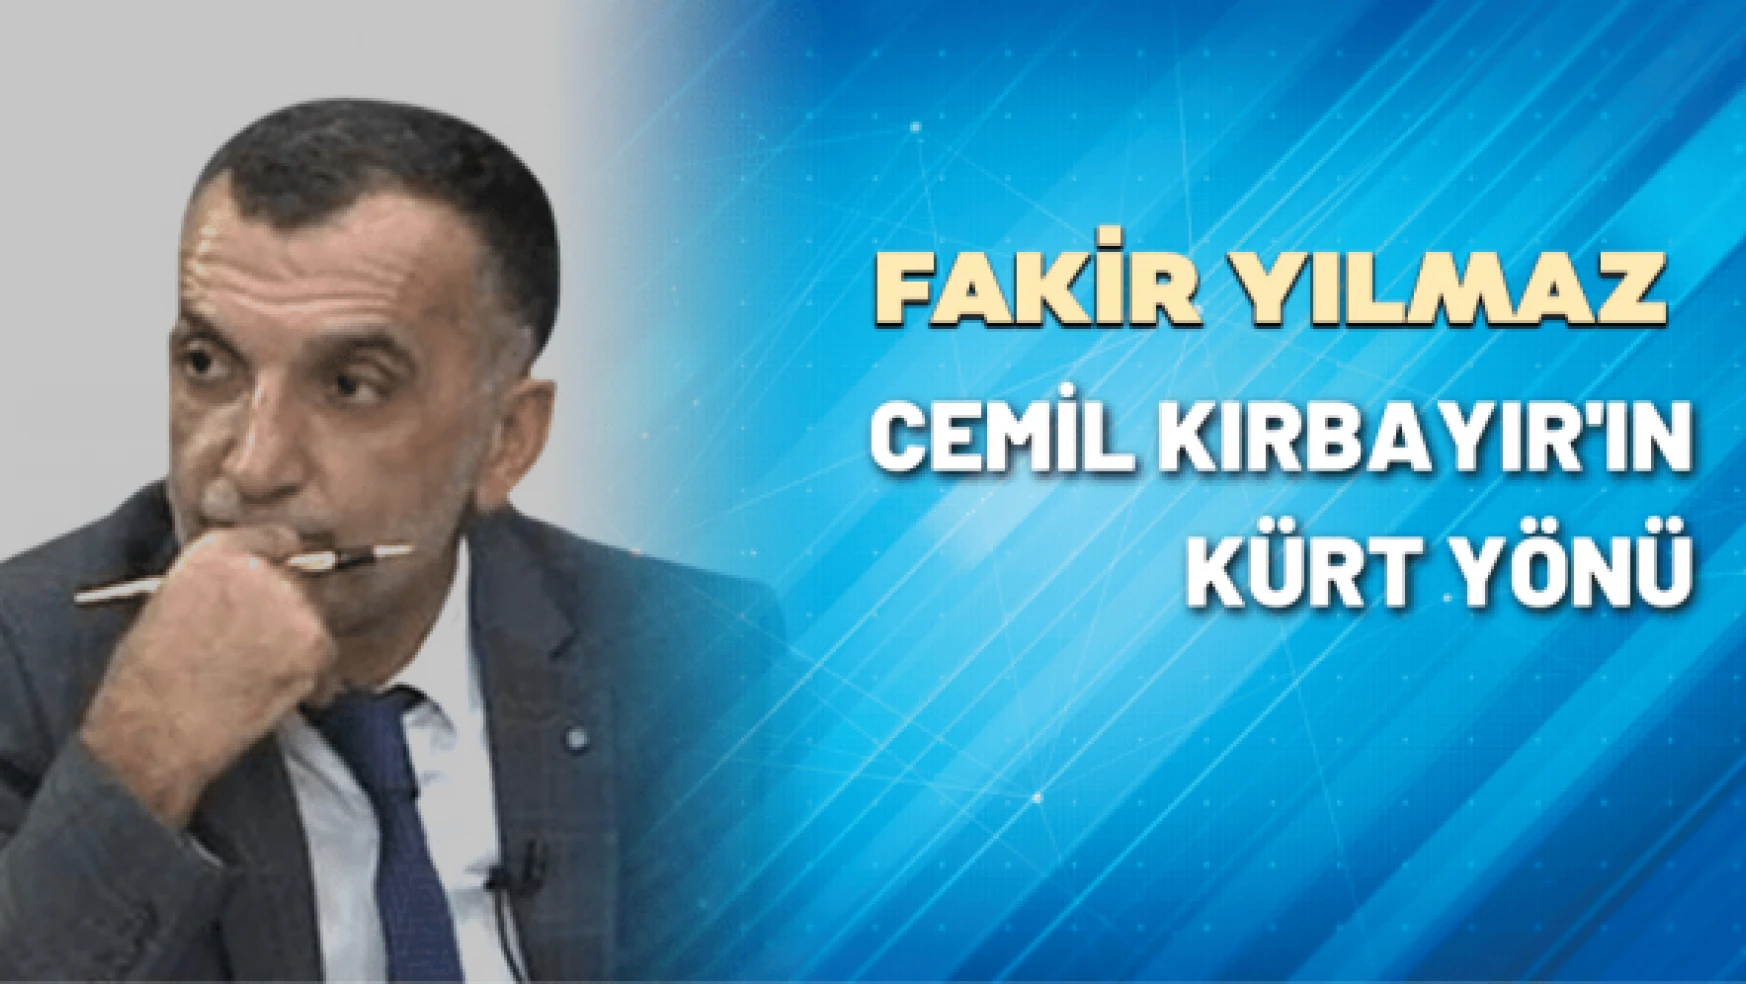 Cemil Kırbayır'ın Kürt yönü